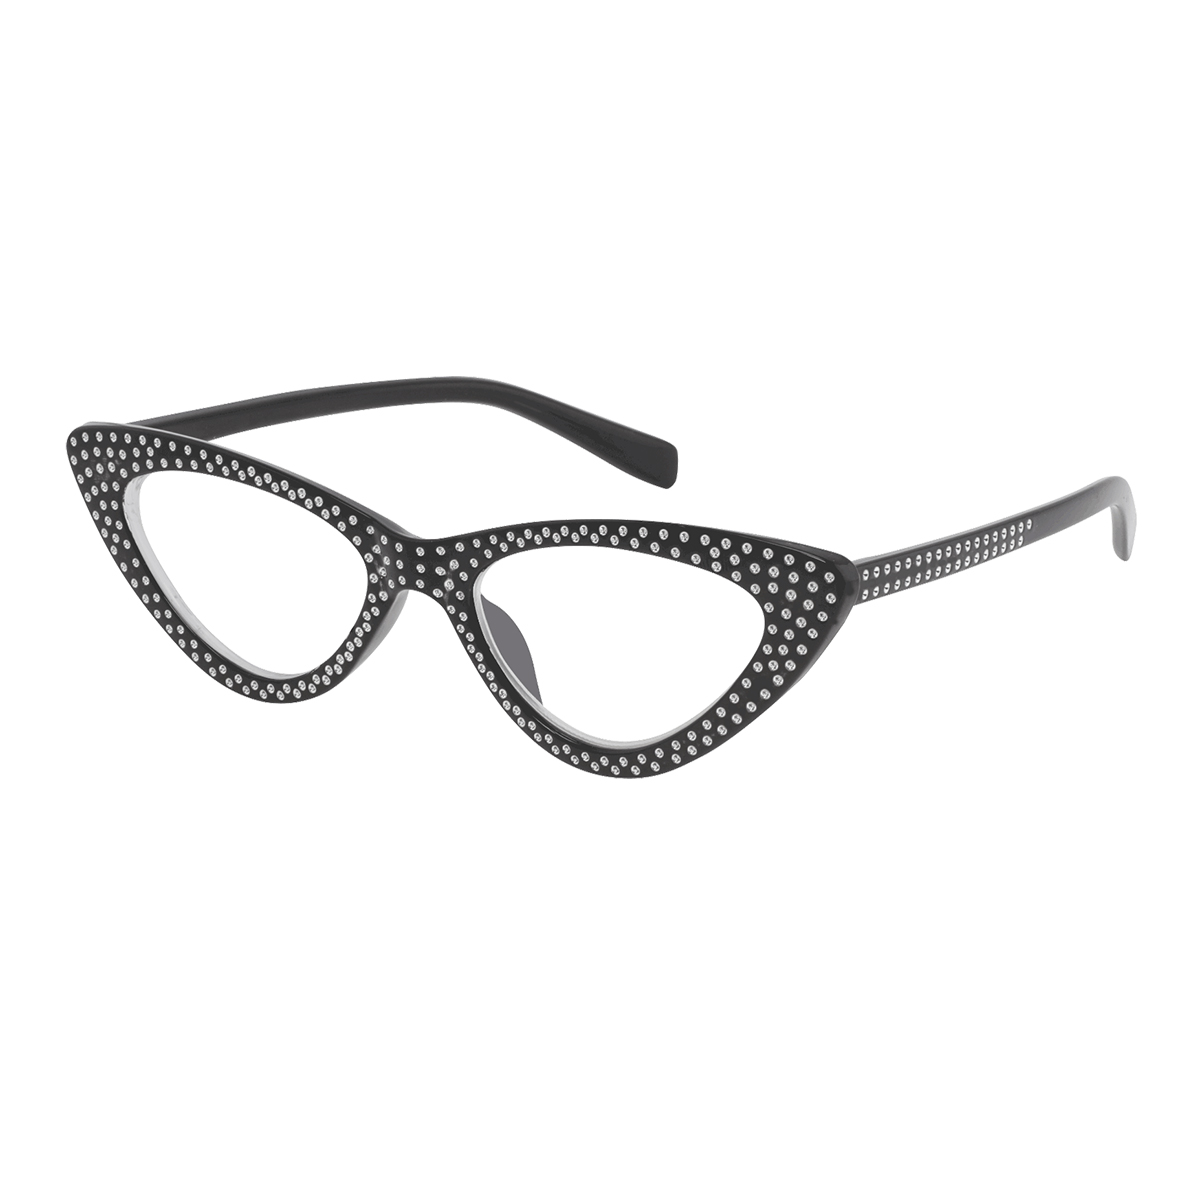 Cirta - Cat-eye Black Reading Glasses for Women